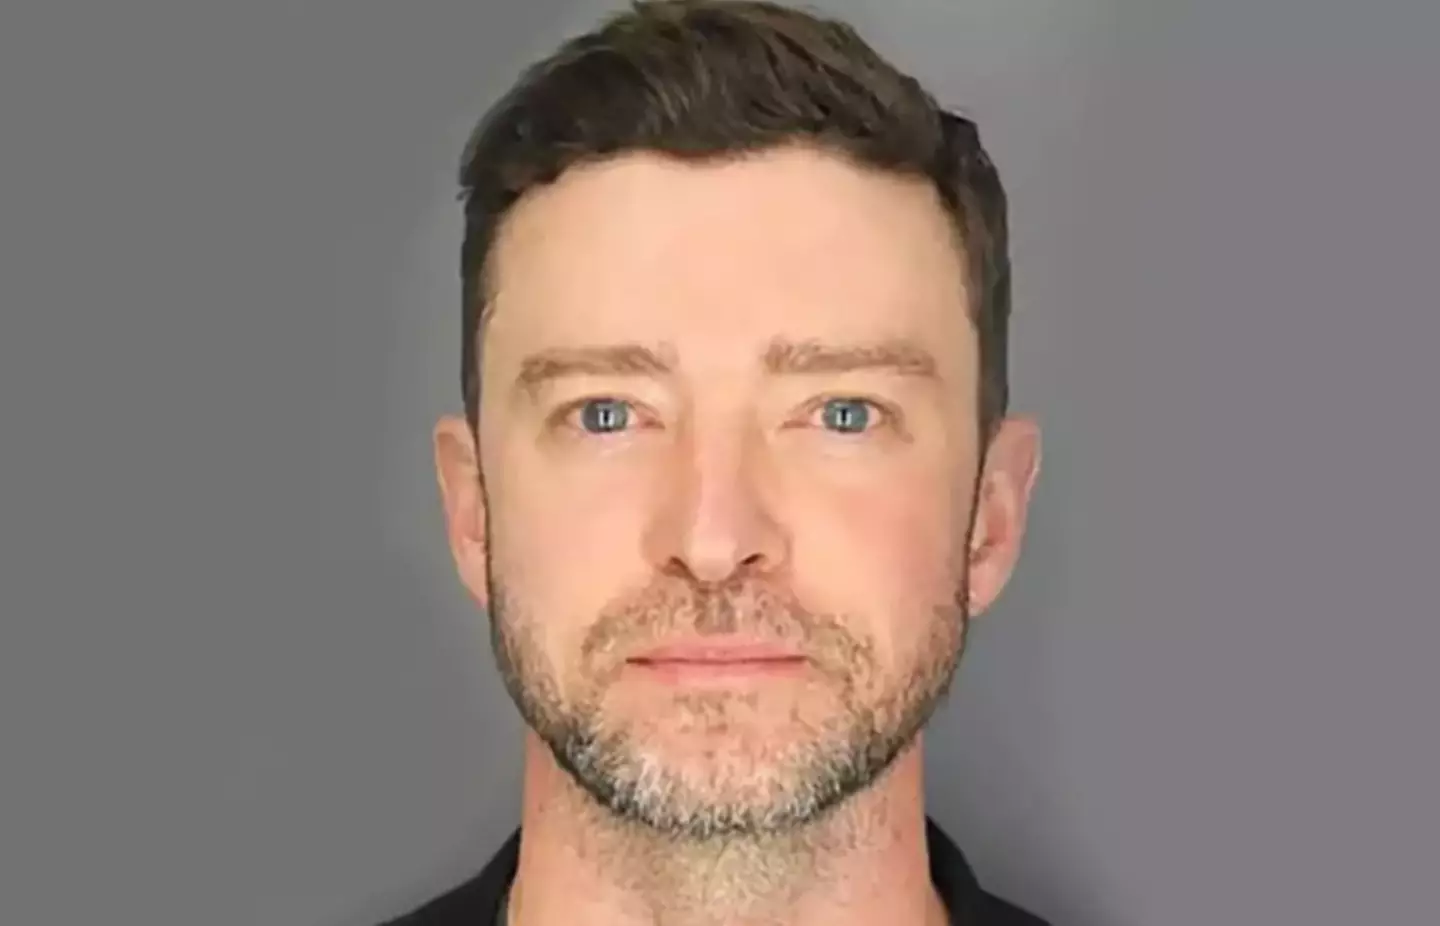 Justin Timberlake's mugshot after being arrested earlier this week. (Sag Harbor Police Dept)